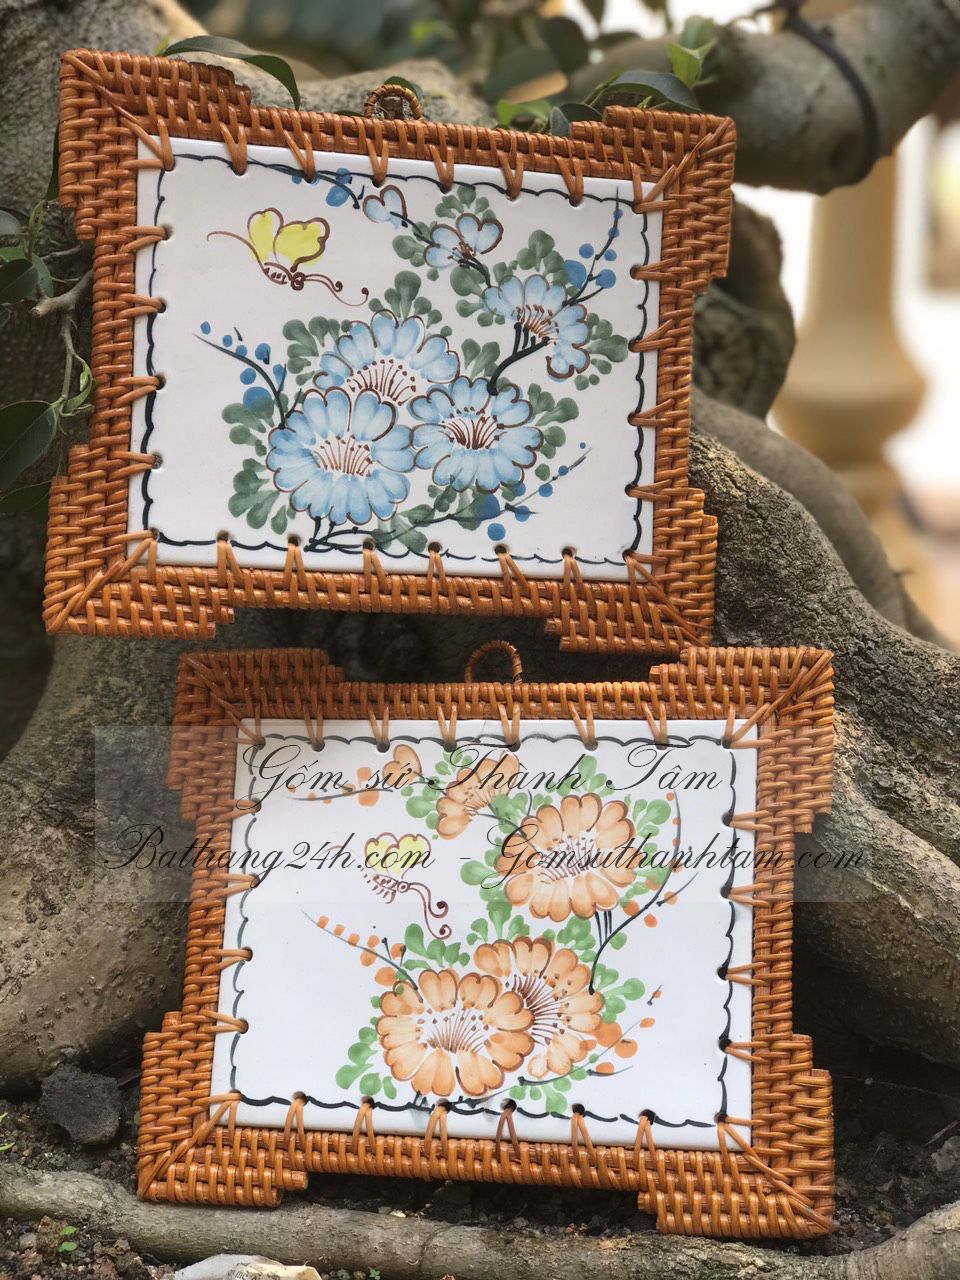 Mua đĩa mây tre đan Hà Nội trang trí vẽ tay hoa hoa tỉ mỉ, đẹp mắt nghệ thuật gốm sứ Bát Tràng cao cấp, giá thành tốt nhất thị trường